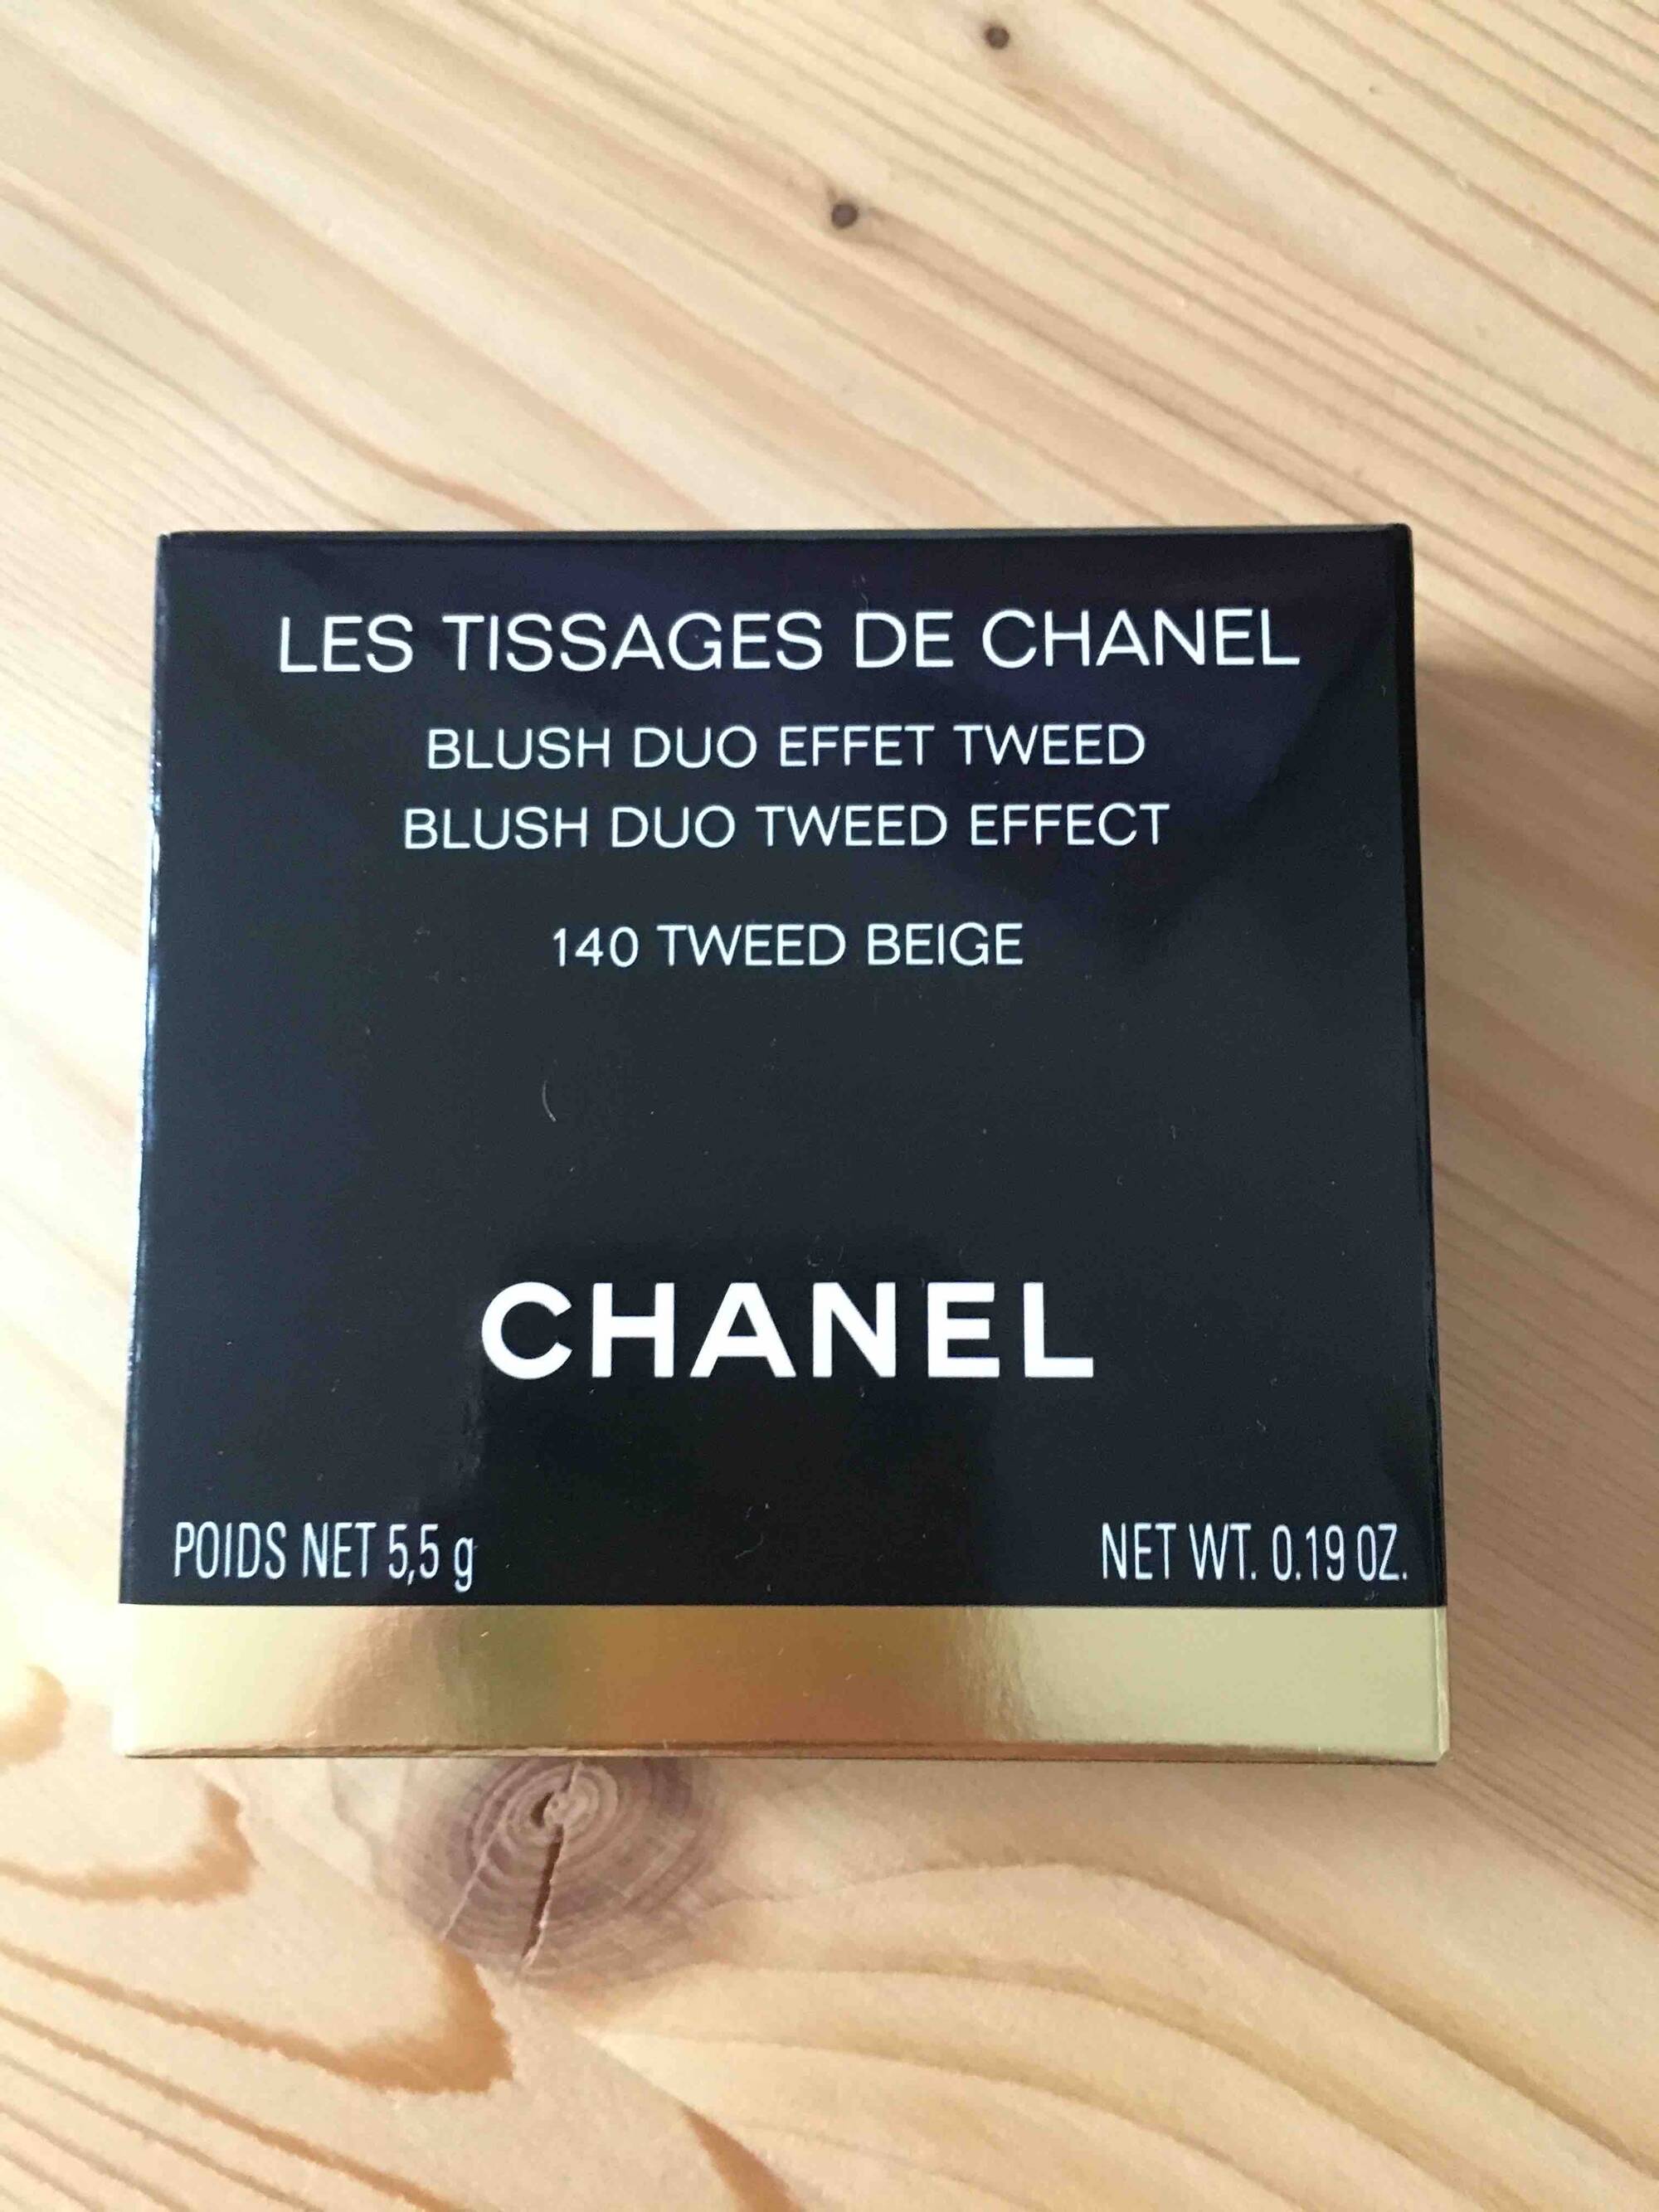 CHANEL - Les tissages de chanel - Blush duo 140 tweed beige